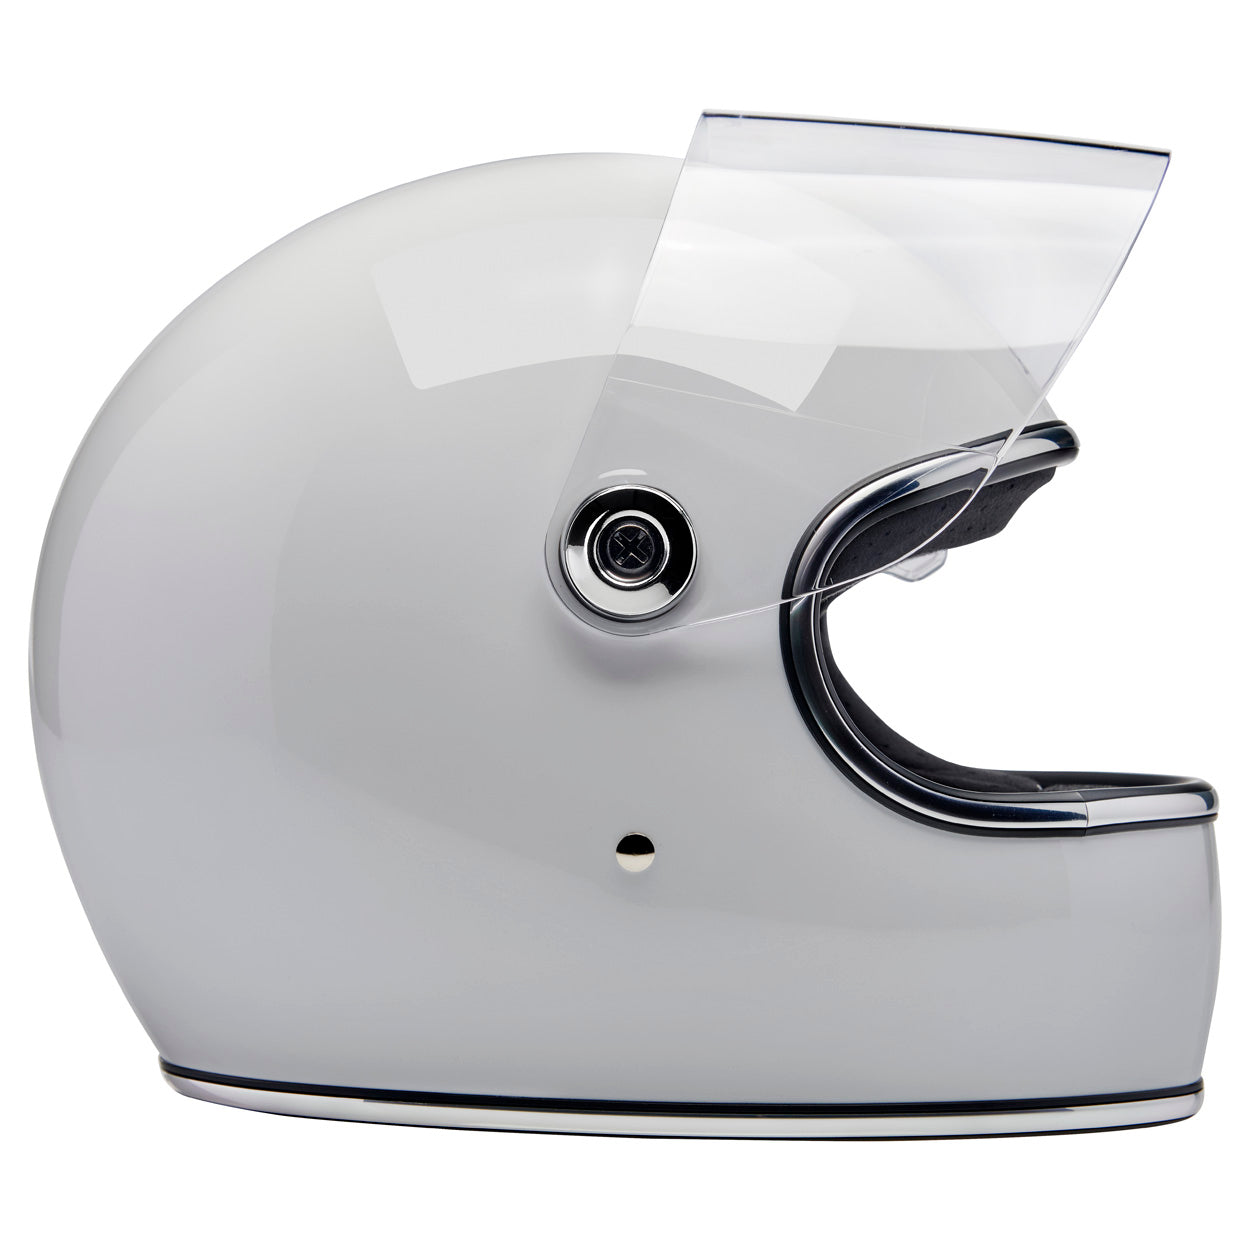 Gringo S ECE R22.06 Helmet - Gloss White